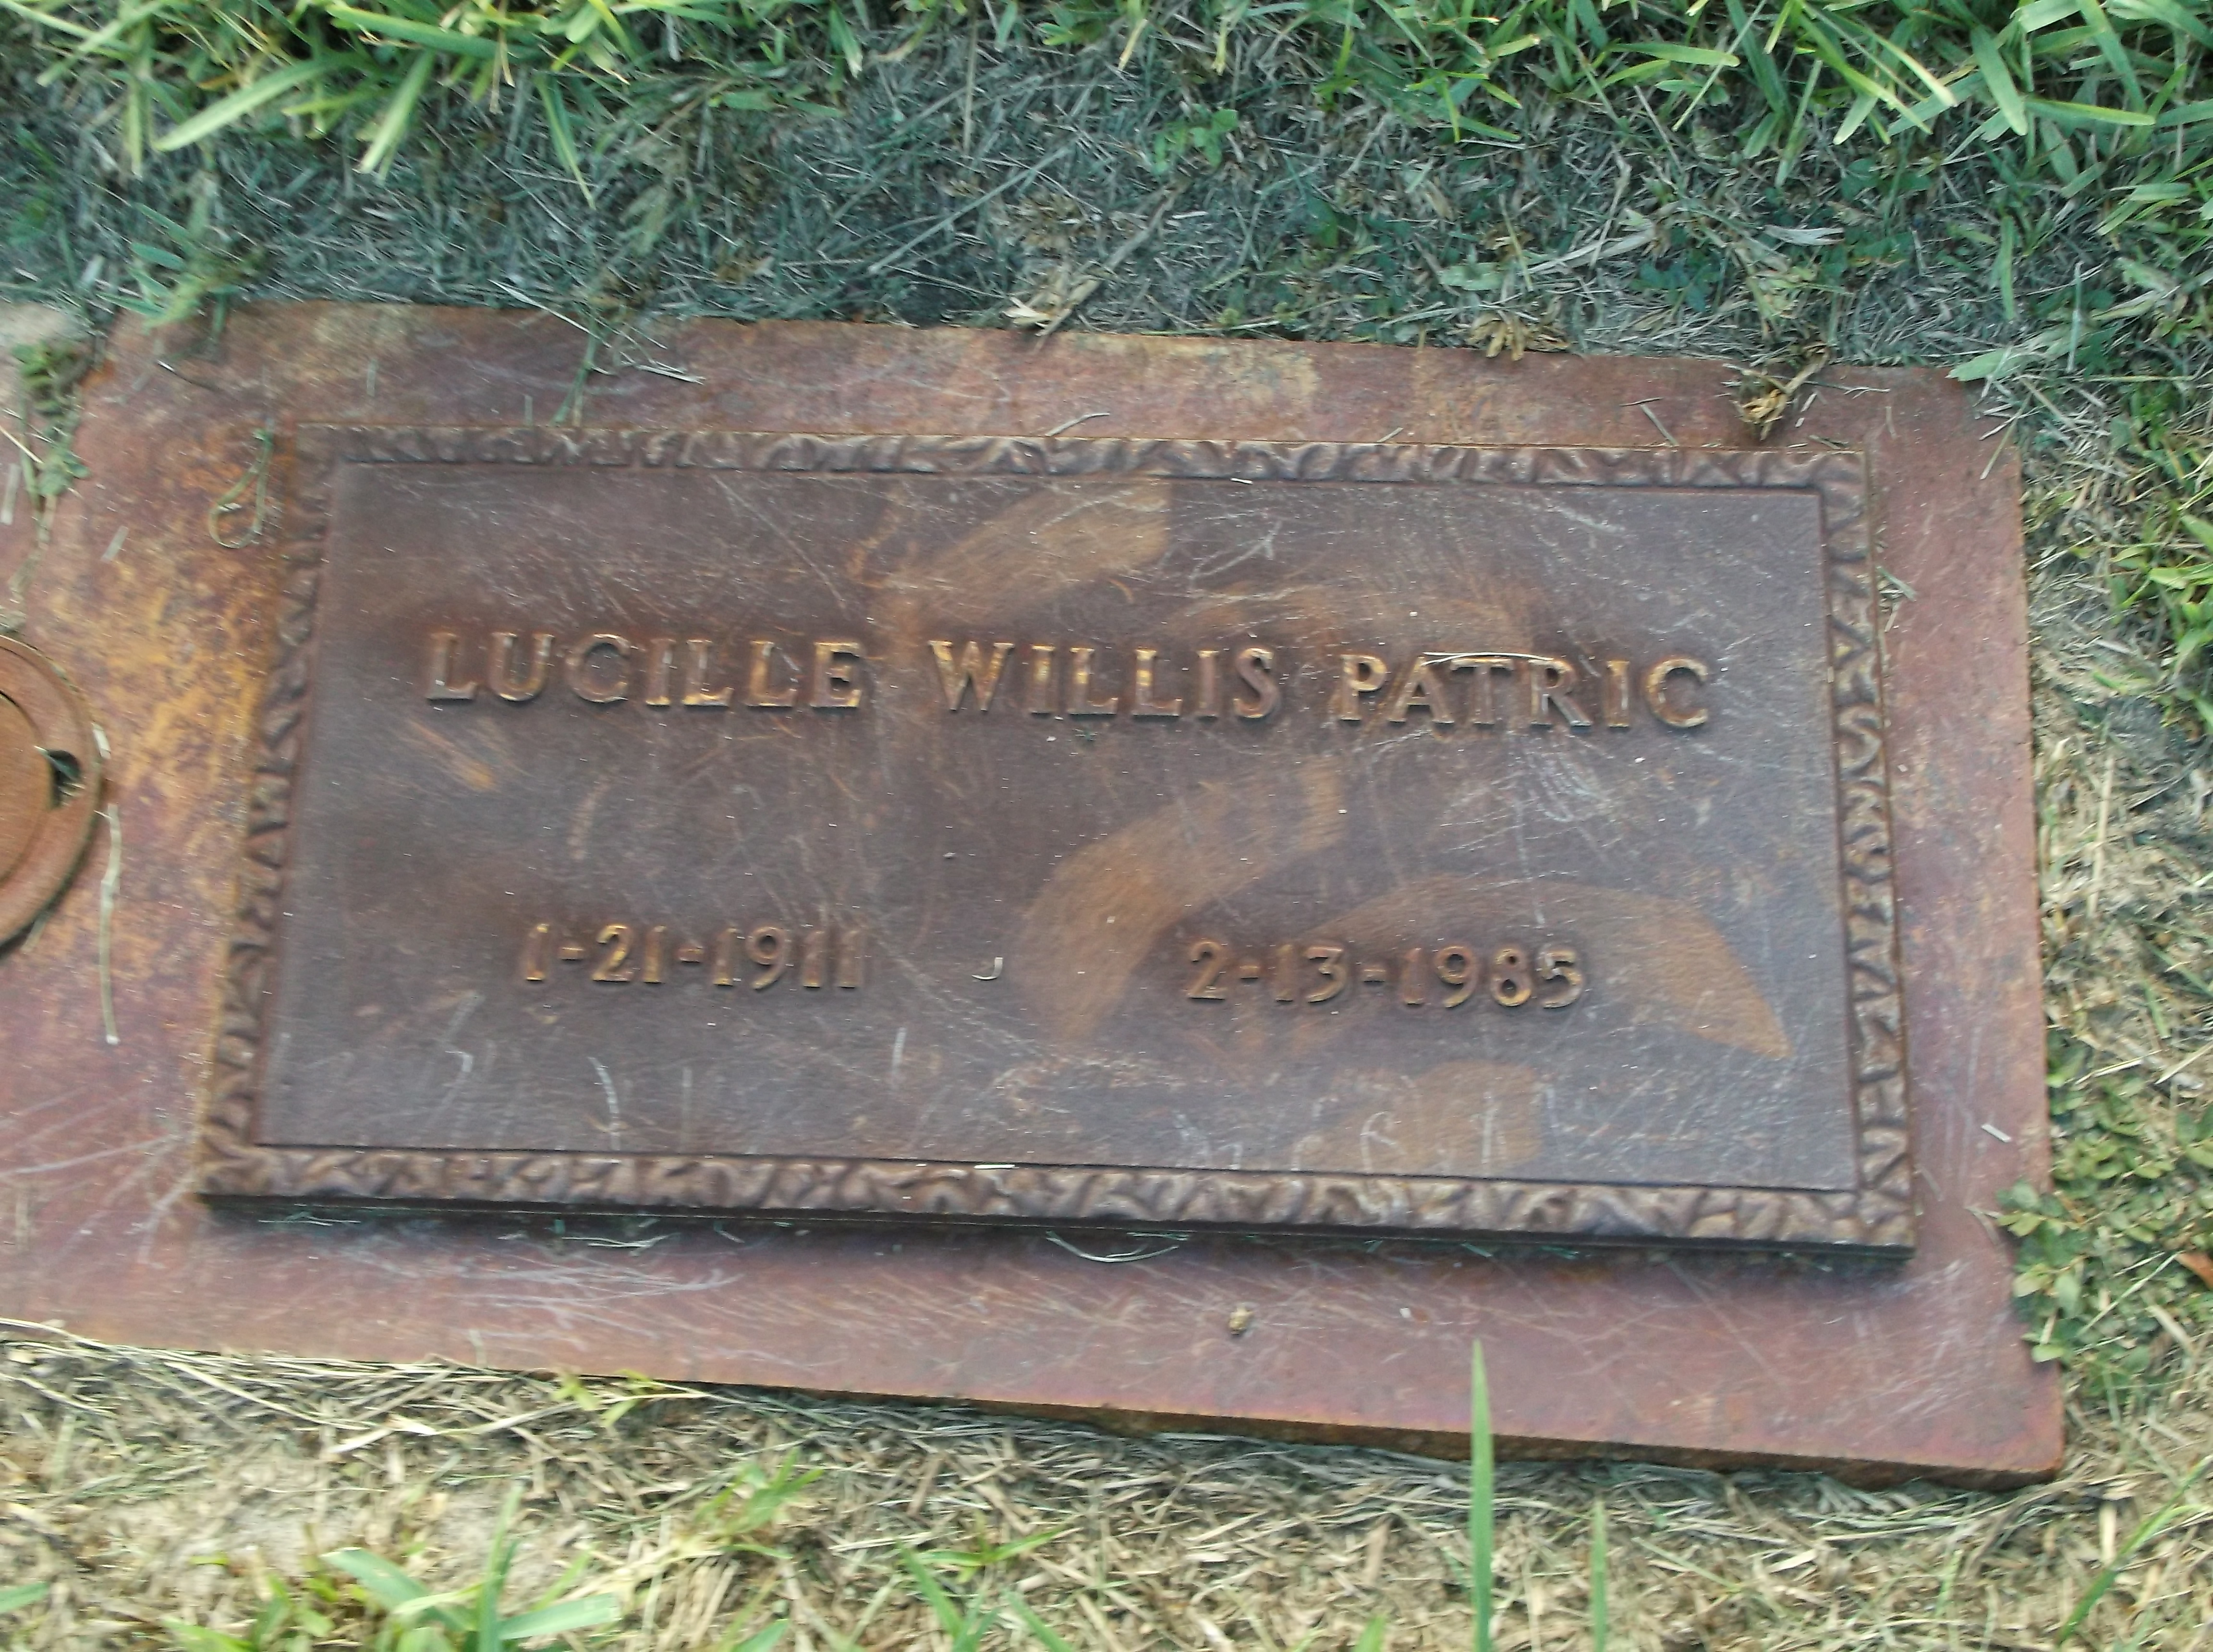 Lucille Willis Patric